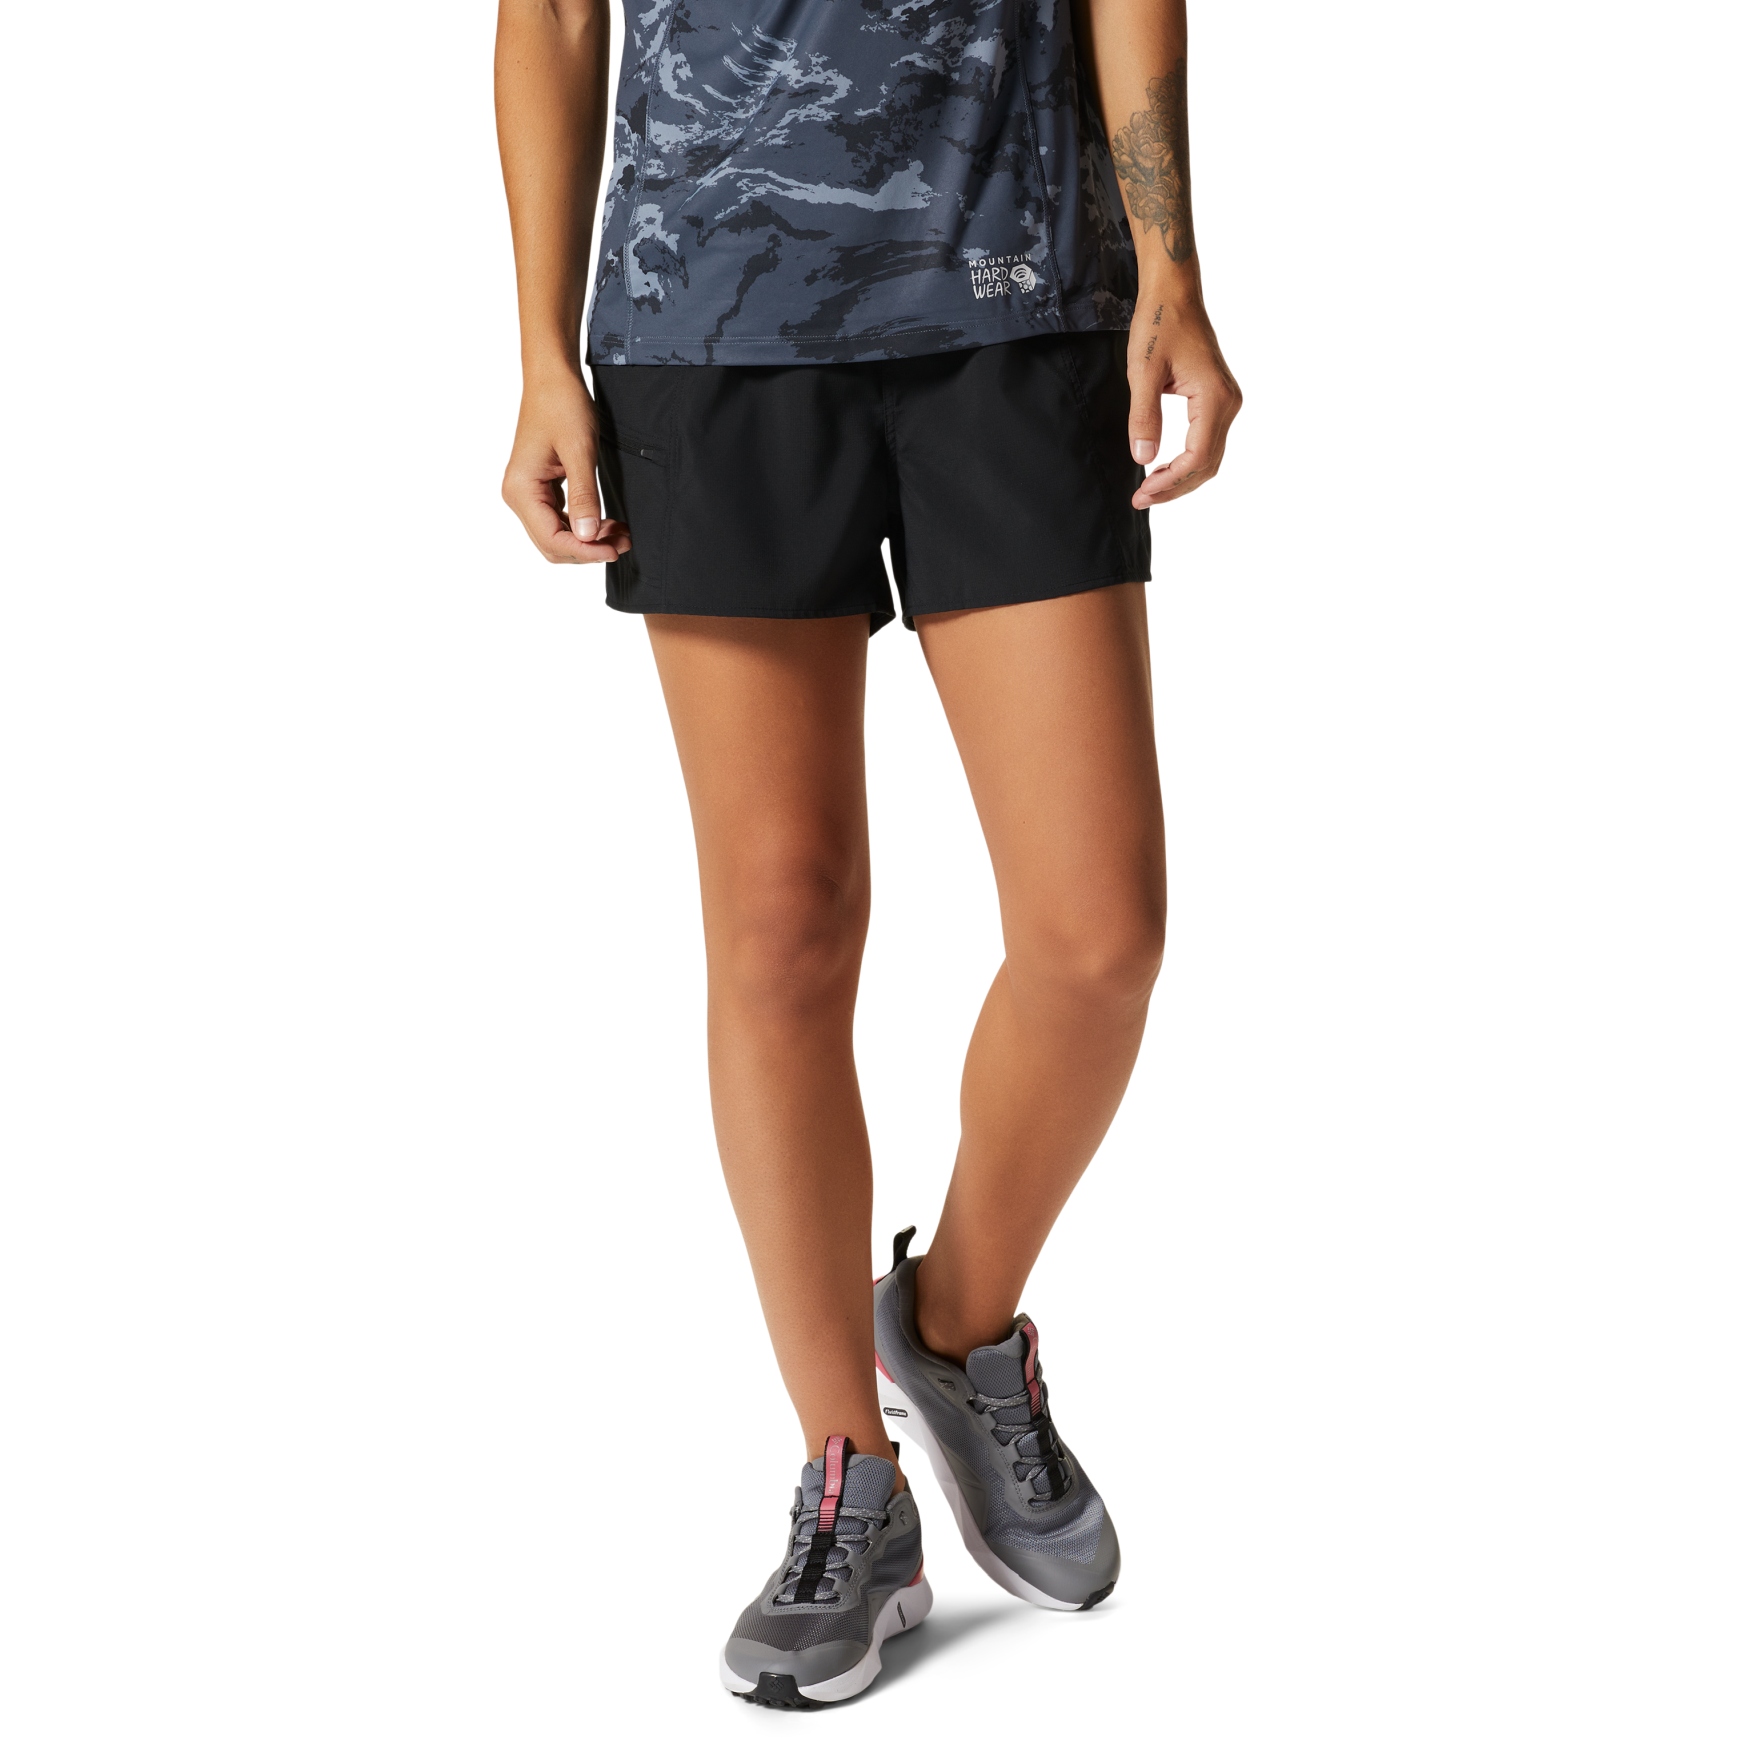 Produktbild von Mountain Hardwear Trail Sender Shorts Damen - schwarz